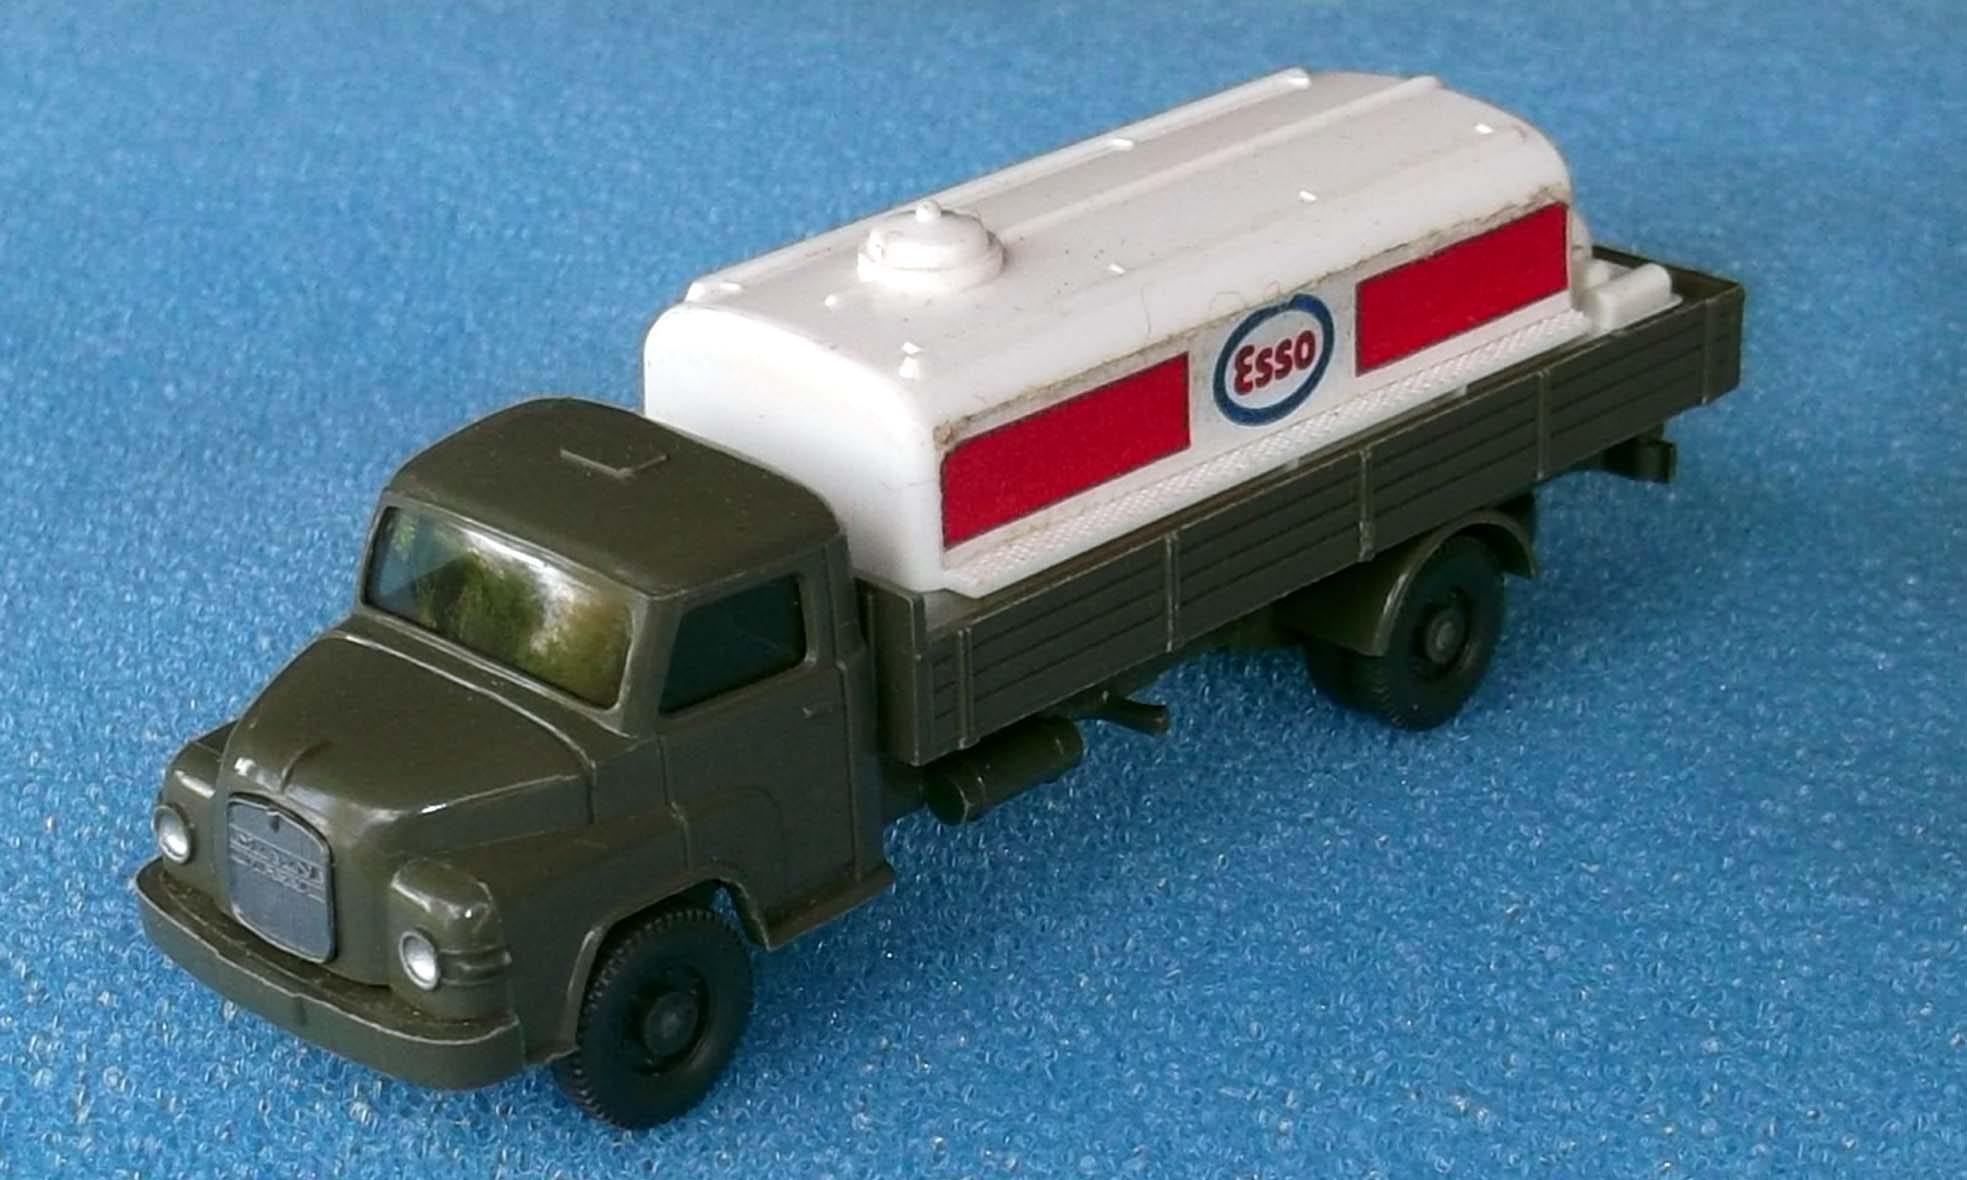 MAN Esso Heizöl Tankwagen
in seltenem hellolivgrün
Bestzustand 25,- €